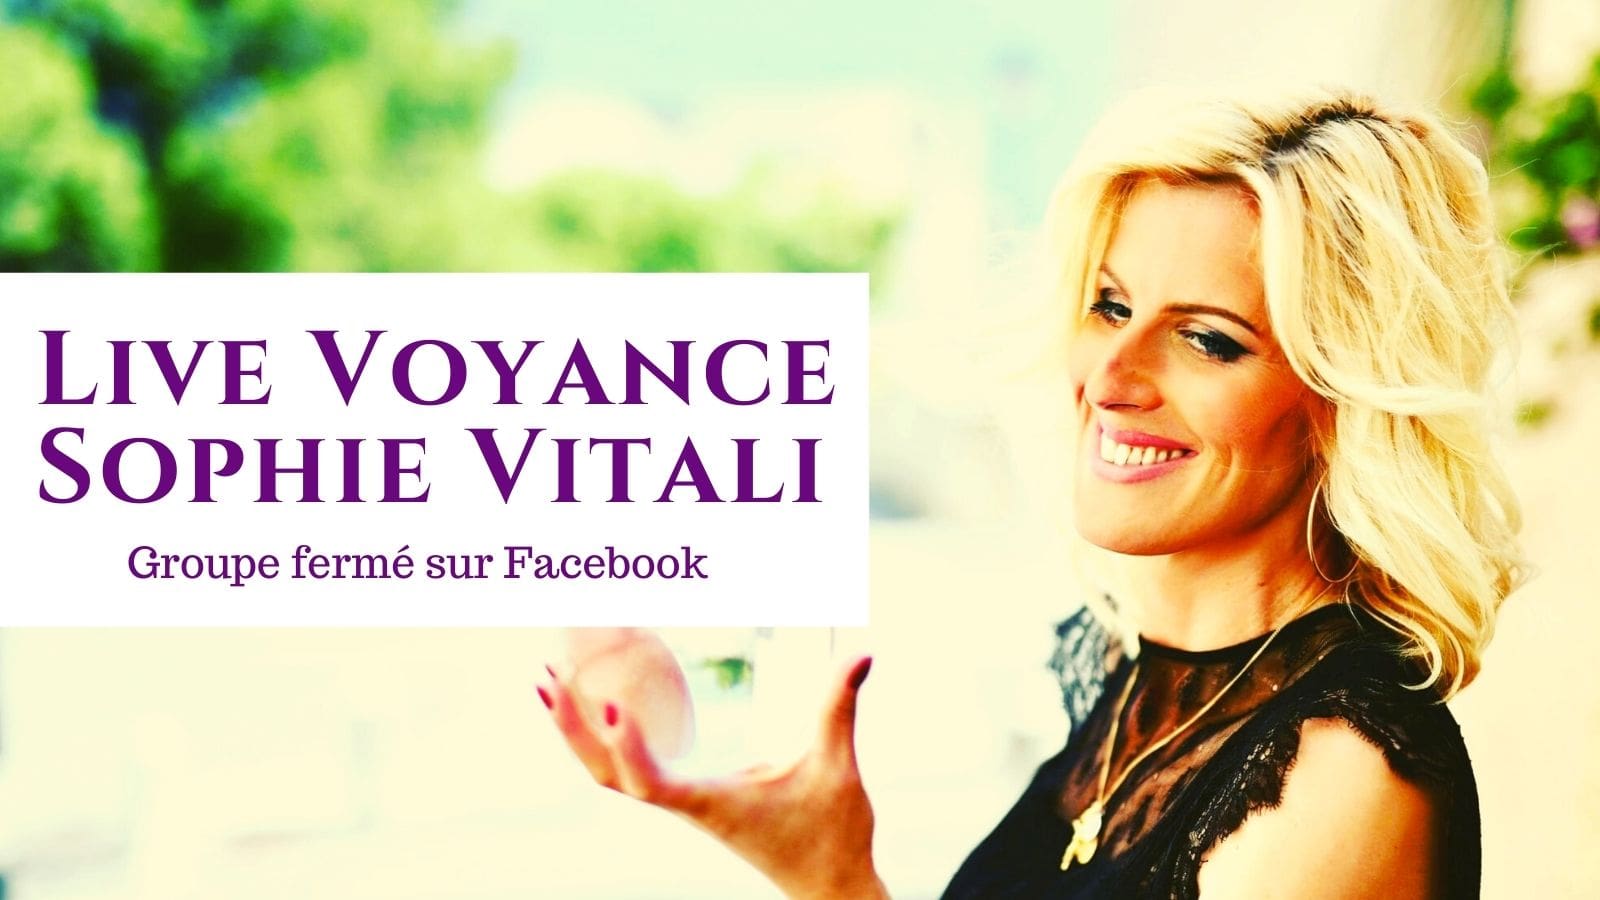 Live voyance gratuit sur Facebook / Sophie Vitali